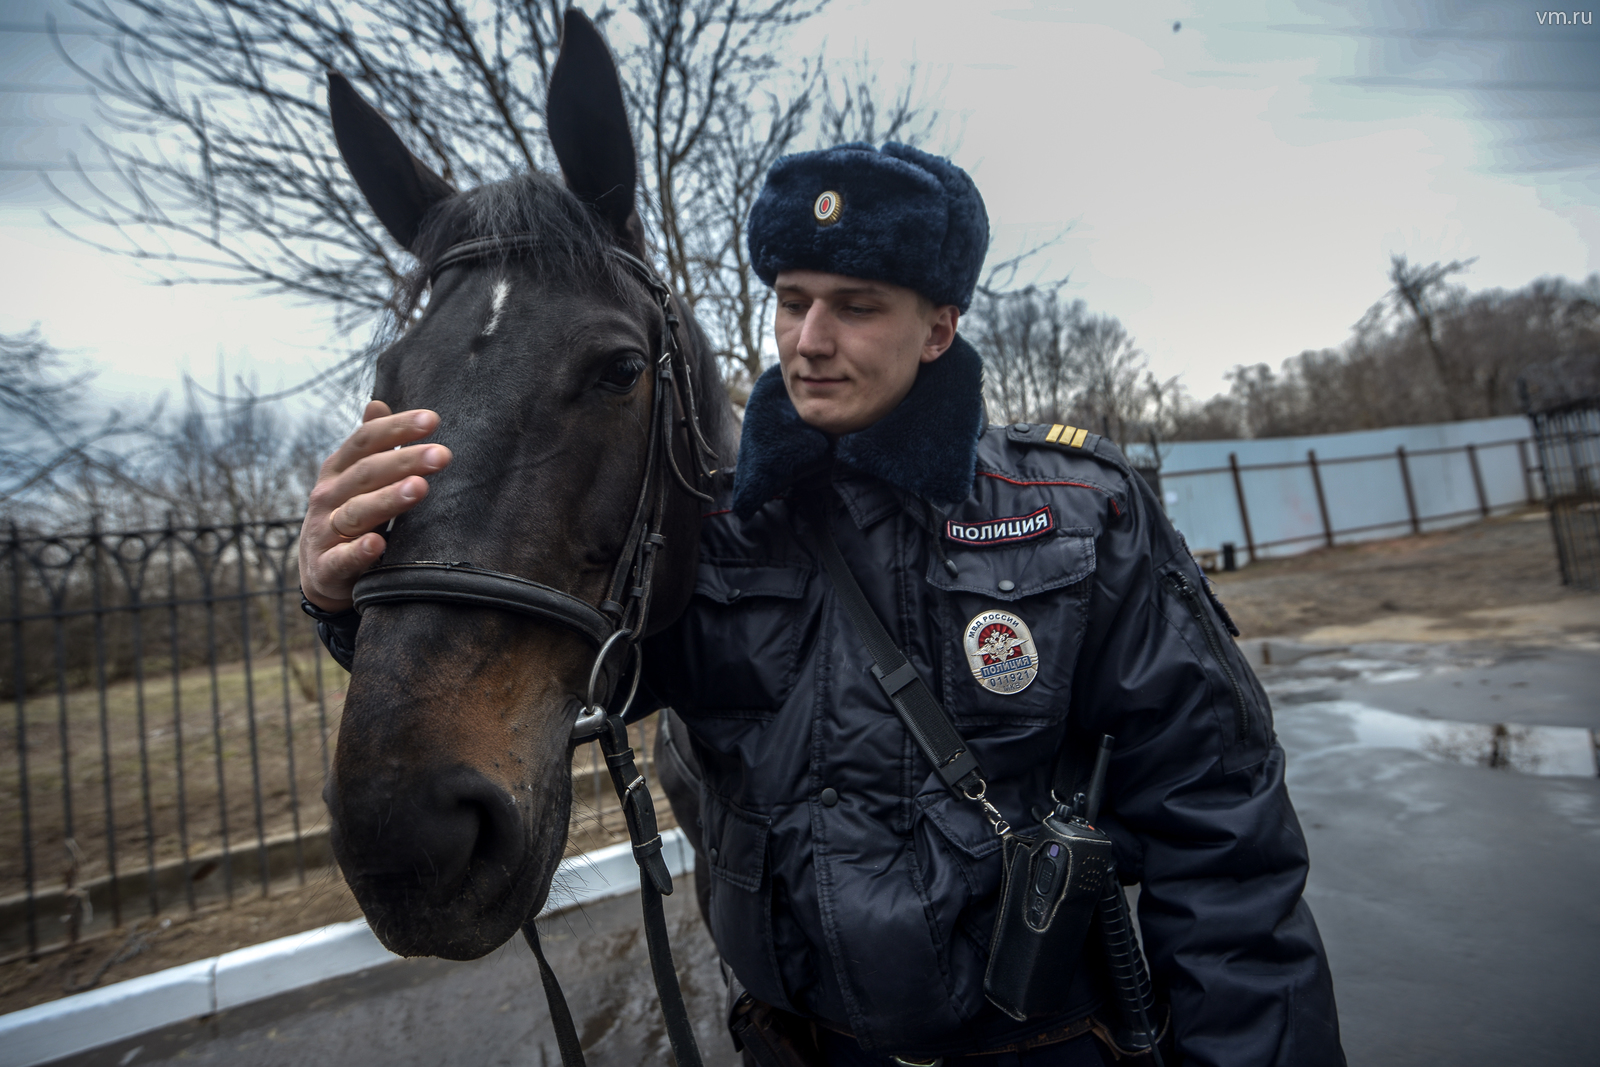 Конная милиция Москва